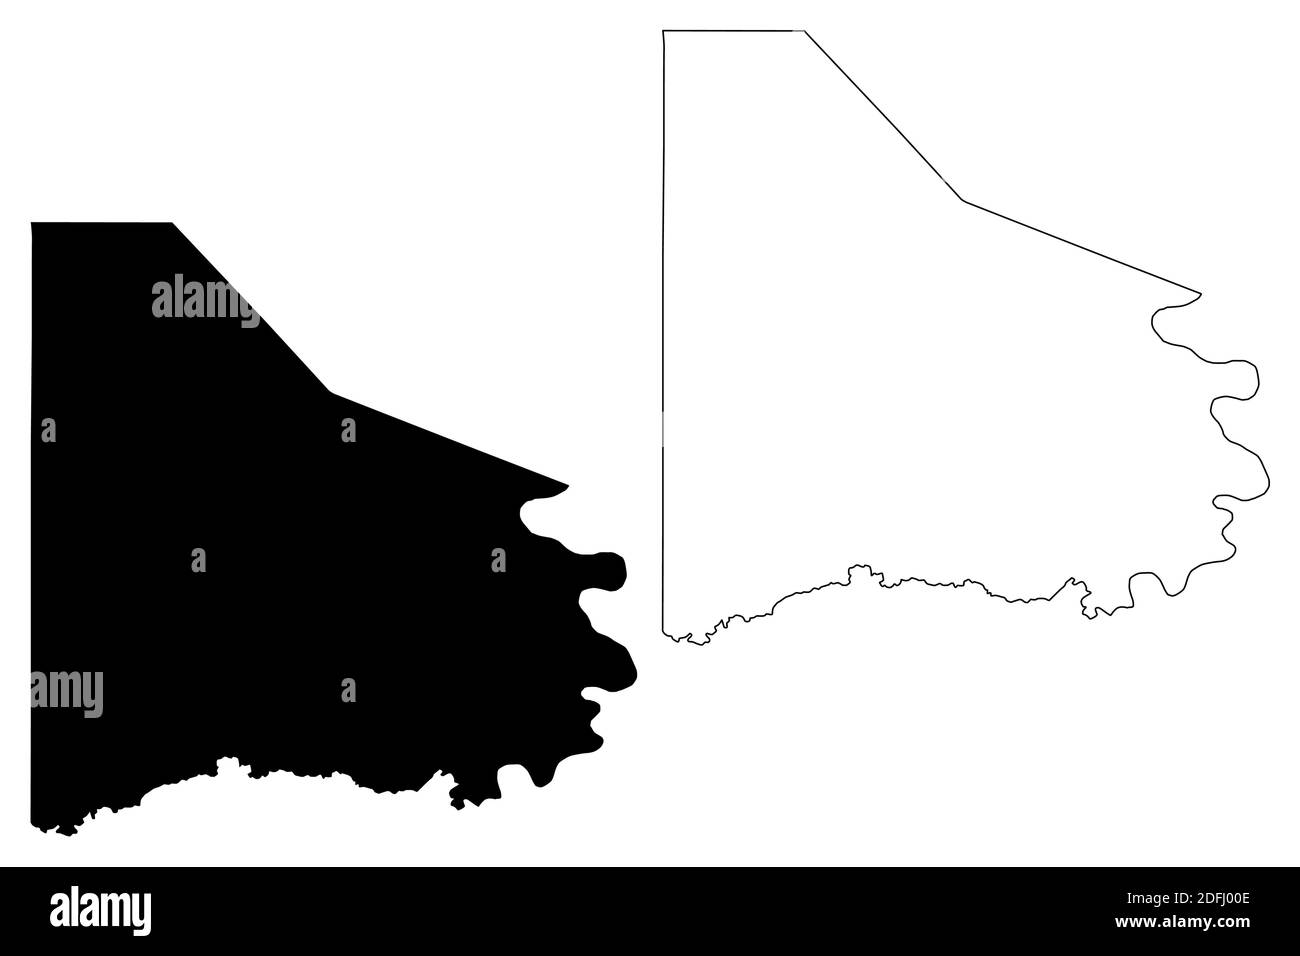 Washington County, Commonwealth of Pennsylvania (Stati Uniti, Stati Uniti d'America, Stati Uniti, Stati Uniti, Stati Uniti) mappa vettoriale illustrazione, schizzo scrimolo Washin Illustrazione Vettoriale